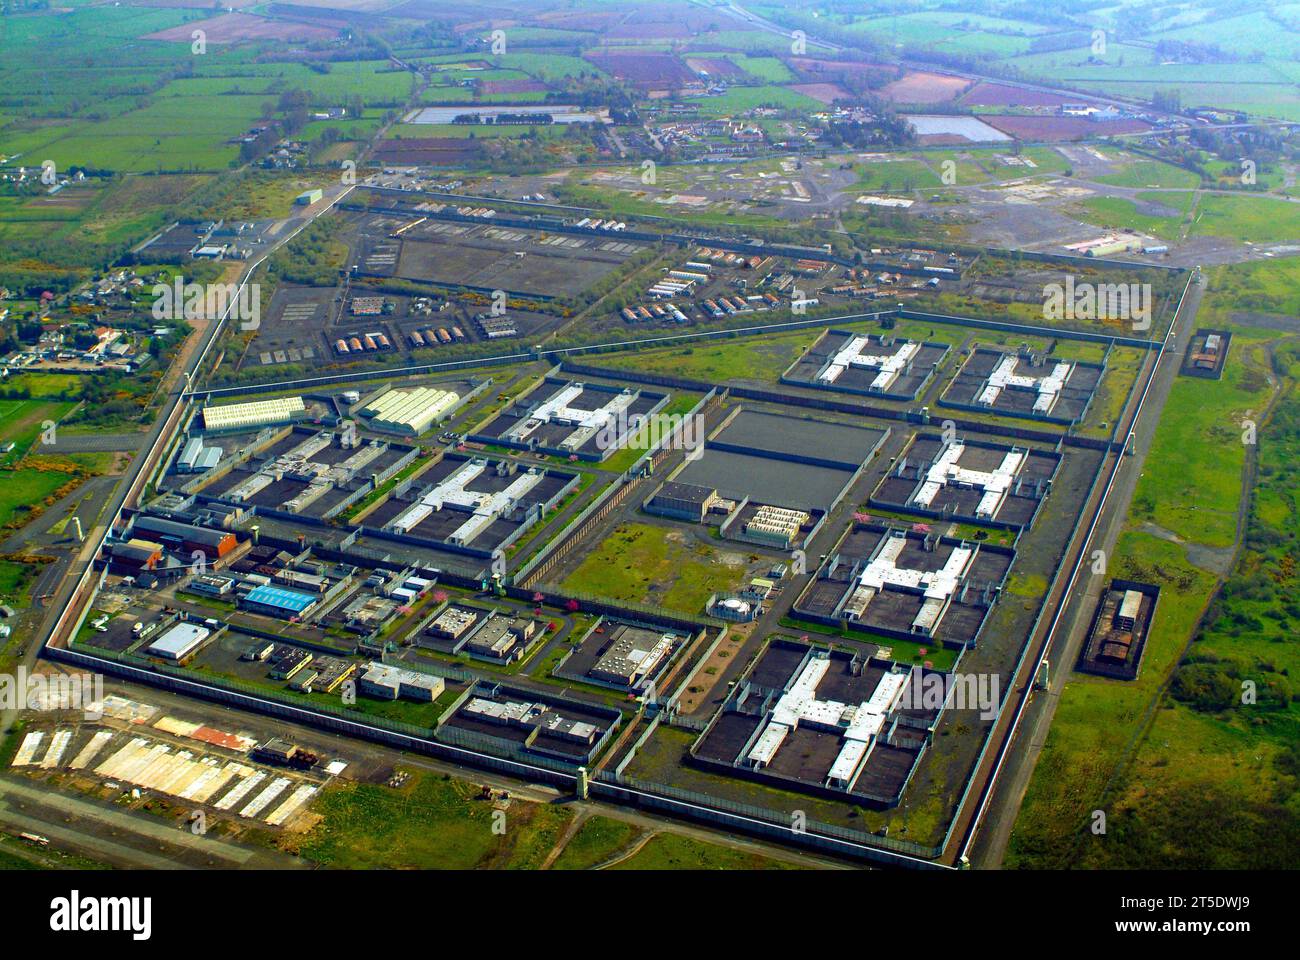 HM prison Maze, long Kesh, H Blocks, County Down, Irlande du Nord Banque D'Images